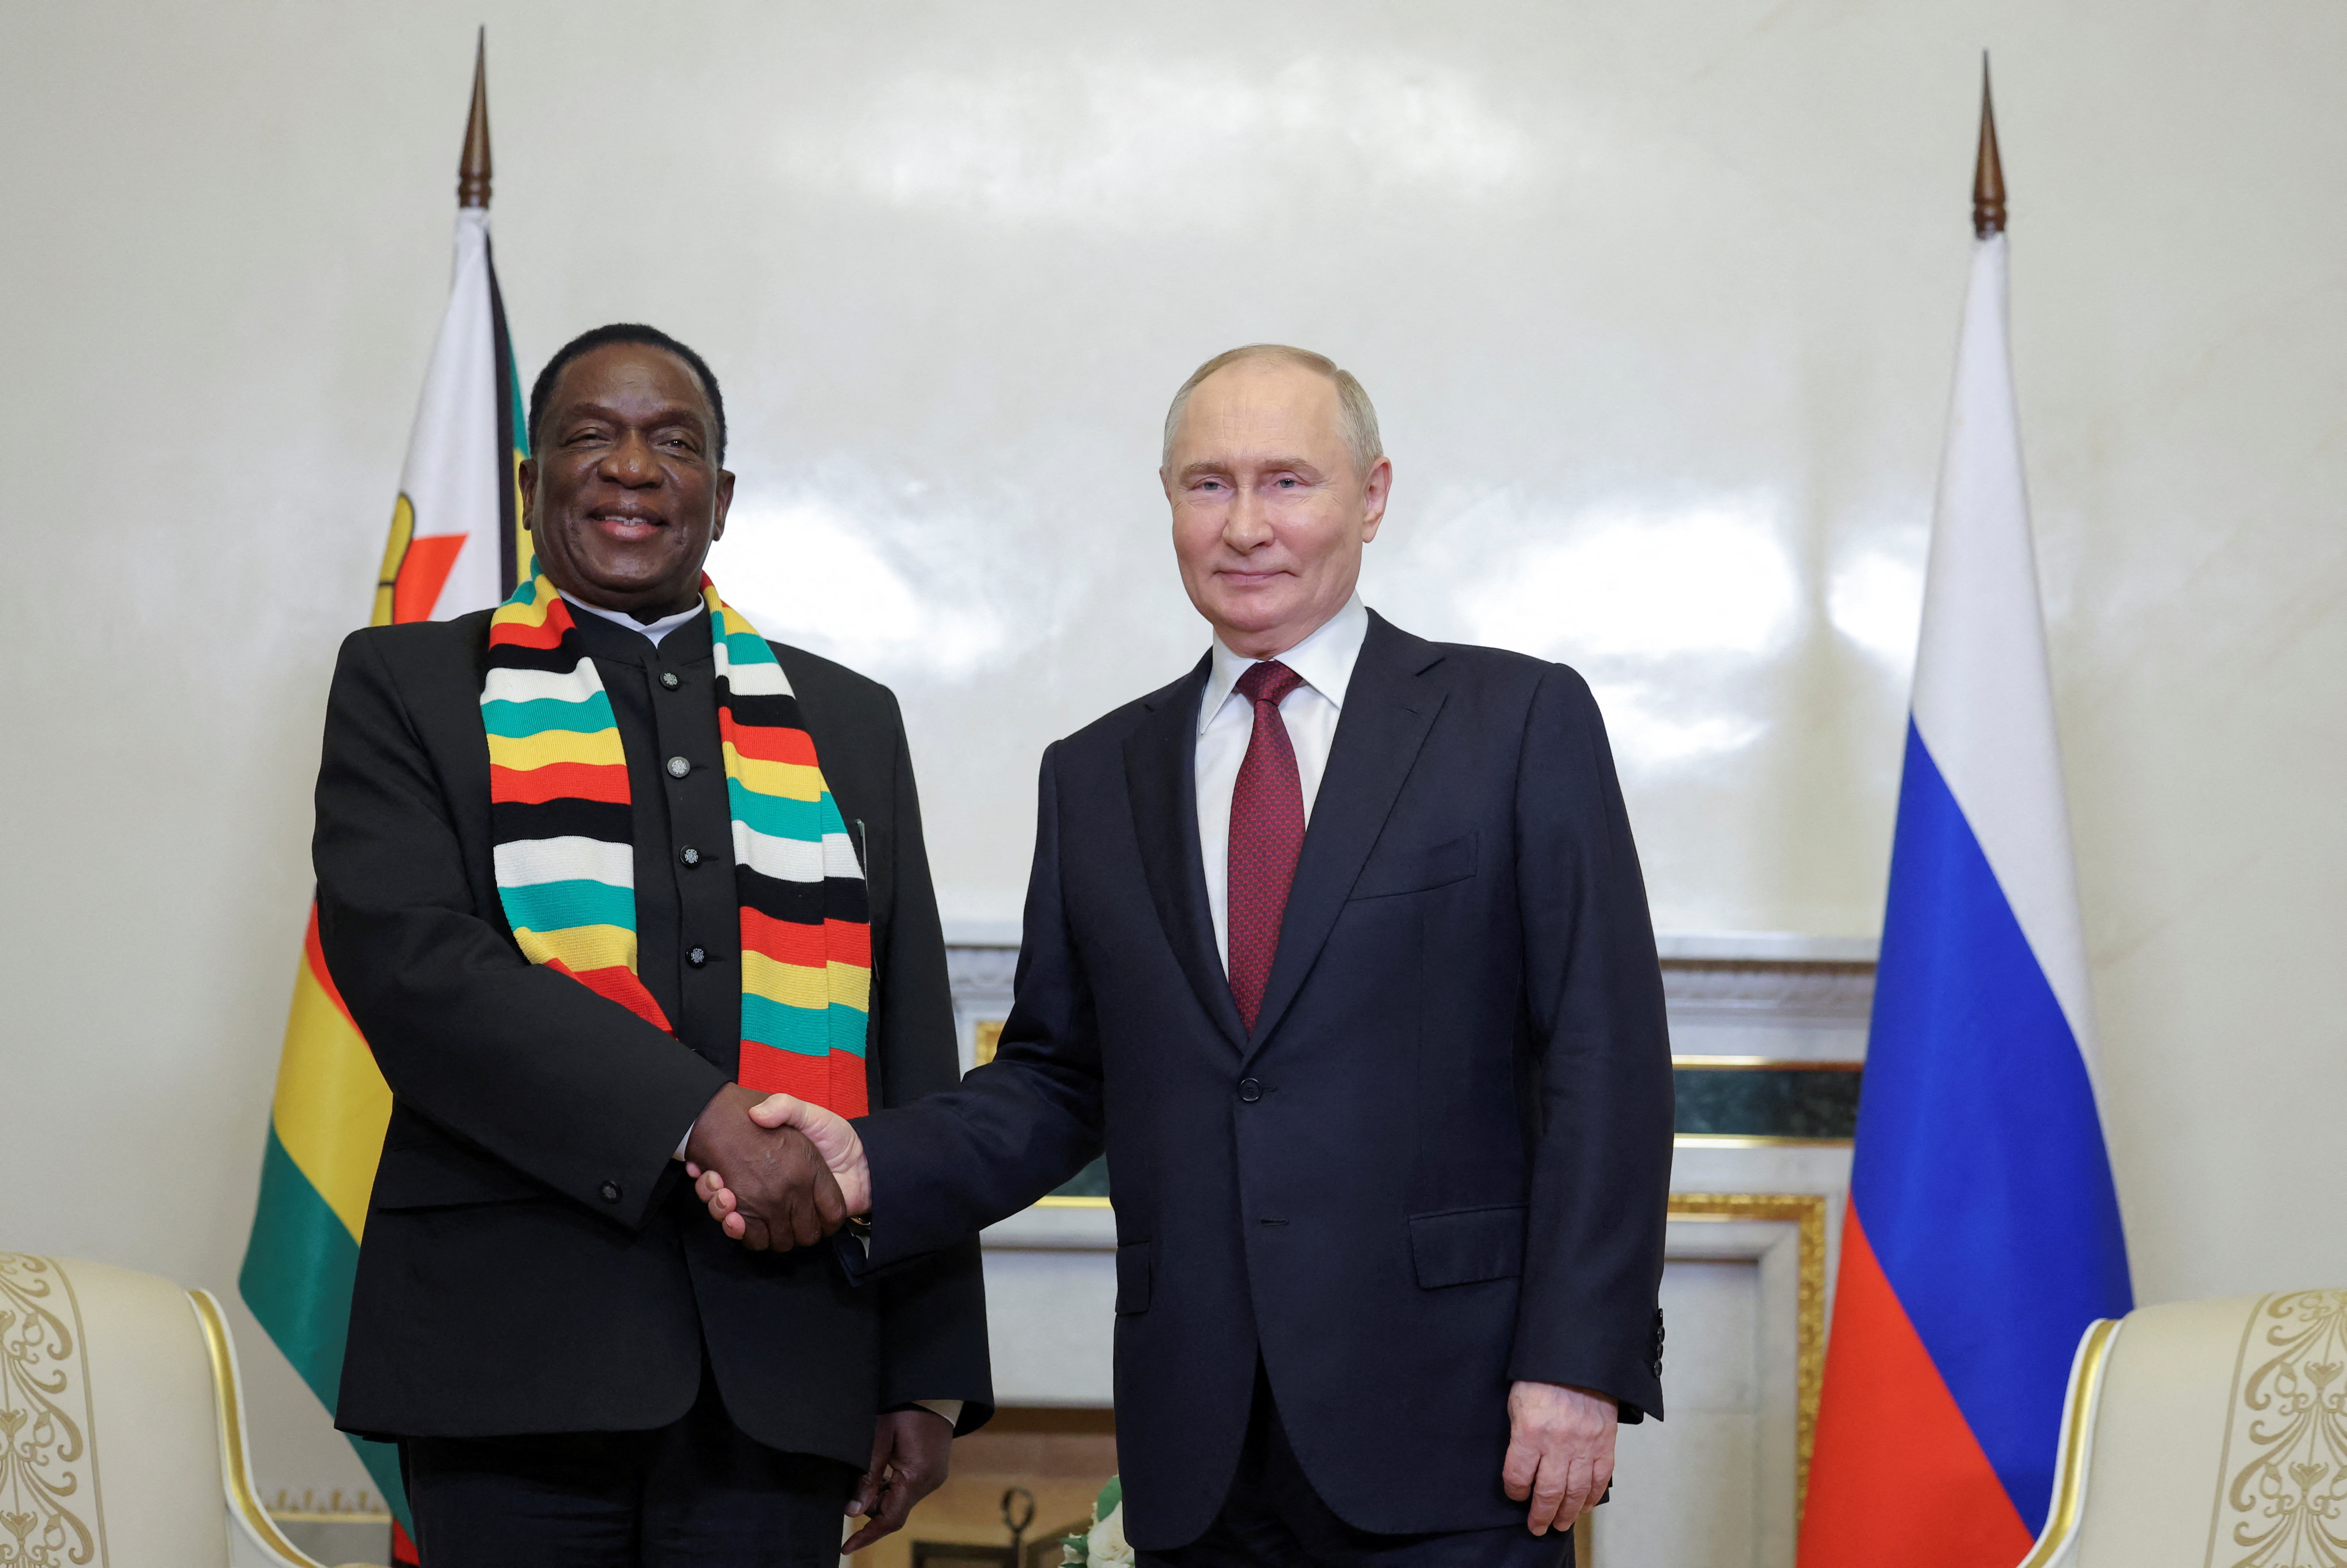 Russia's President Putin and Zimbabwe's President Mnangagwa meet in St Petersburg